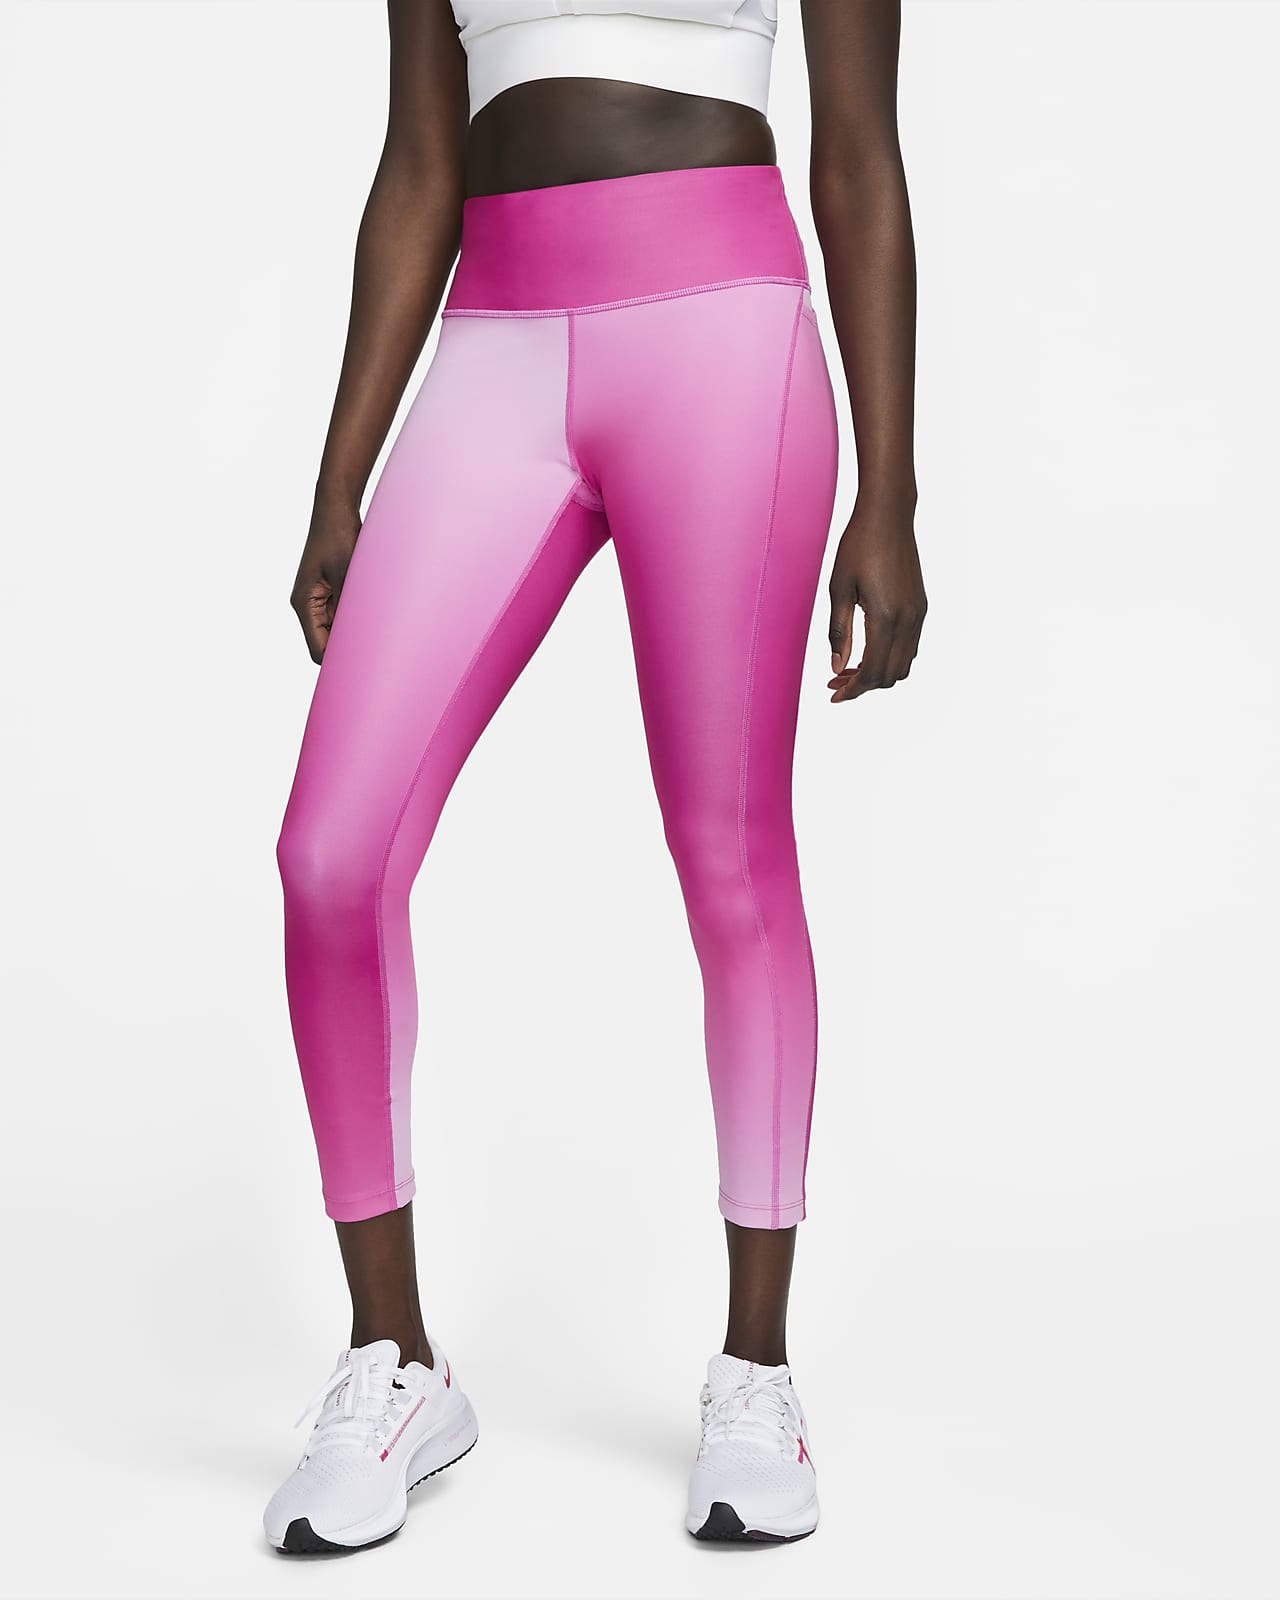 Lenen kussen schrobben Nike Fast Women's Mid-Rise 7/8 Gradient-Dye Running Leggings with Pockets.  Nike LU